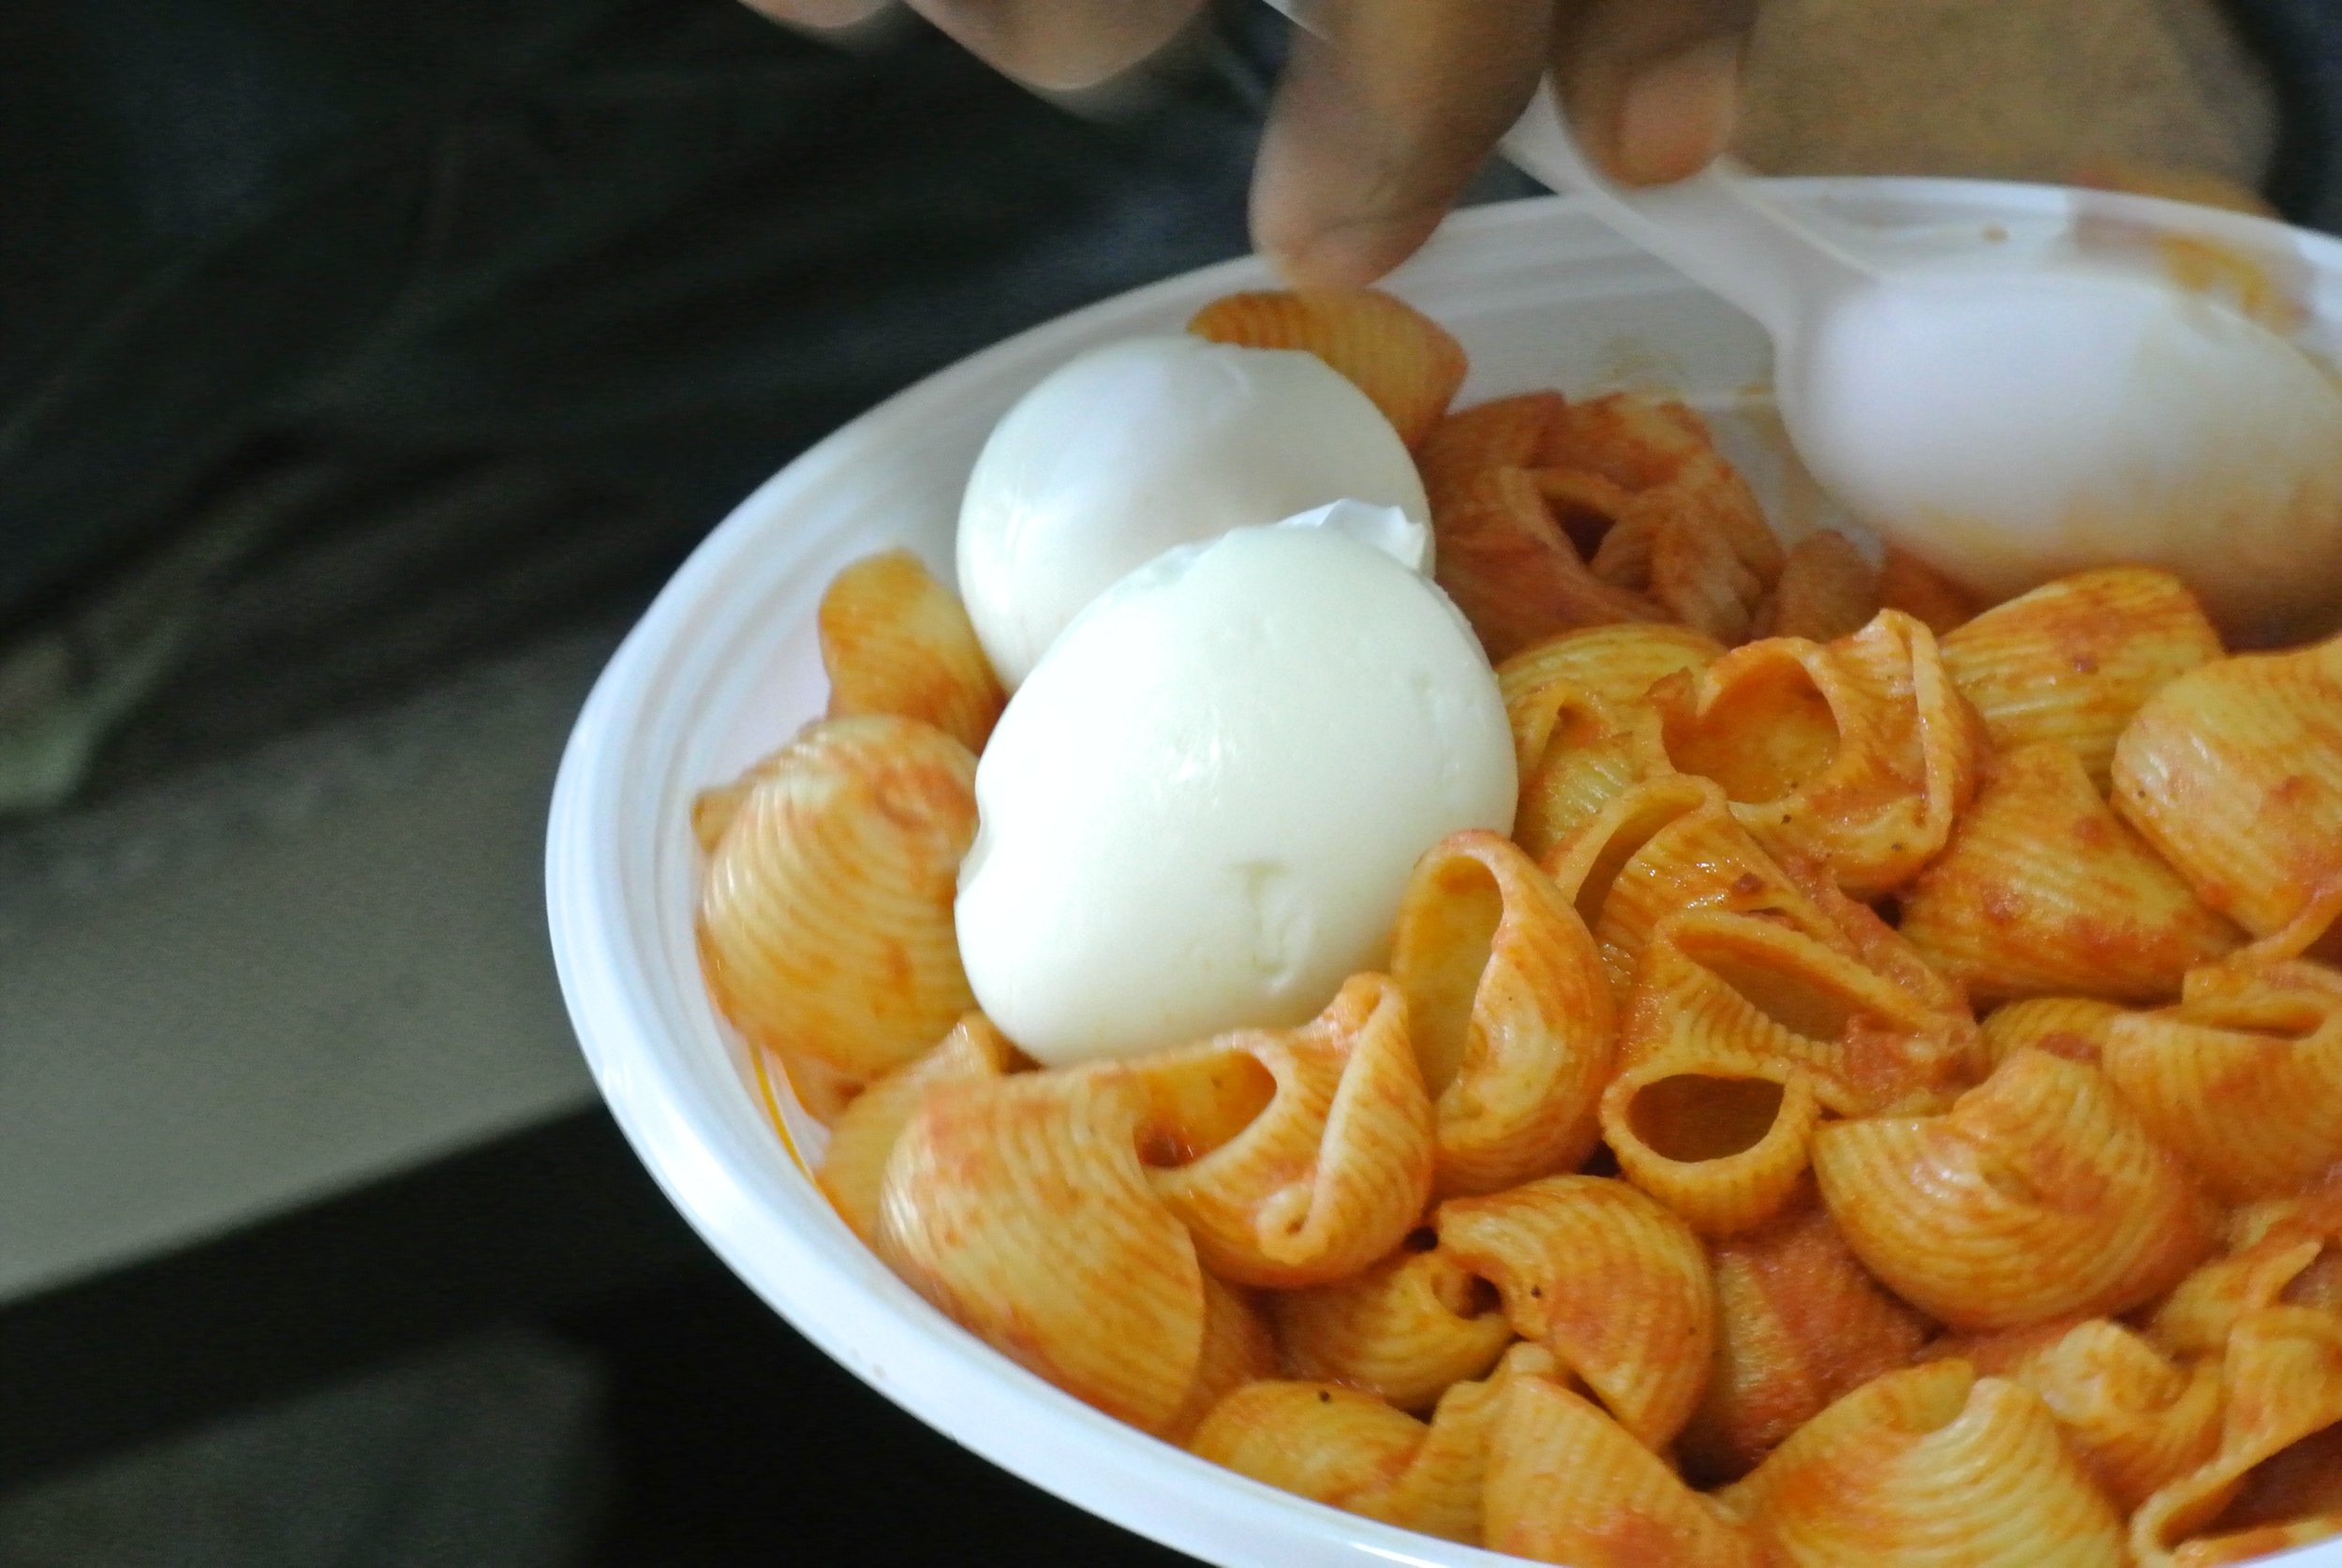 Pasta con uova sode: il piatto che veniva servito ogni giorno al centro accoglienza.